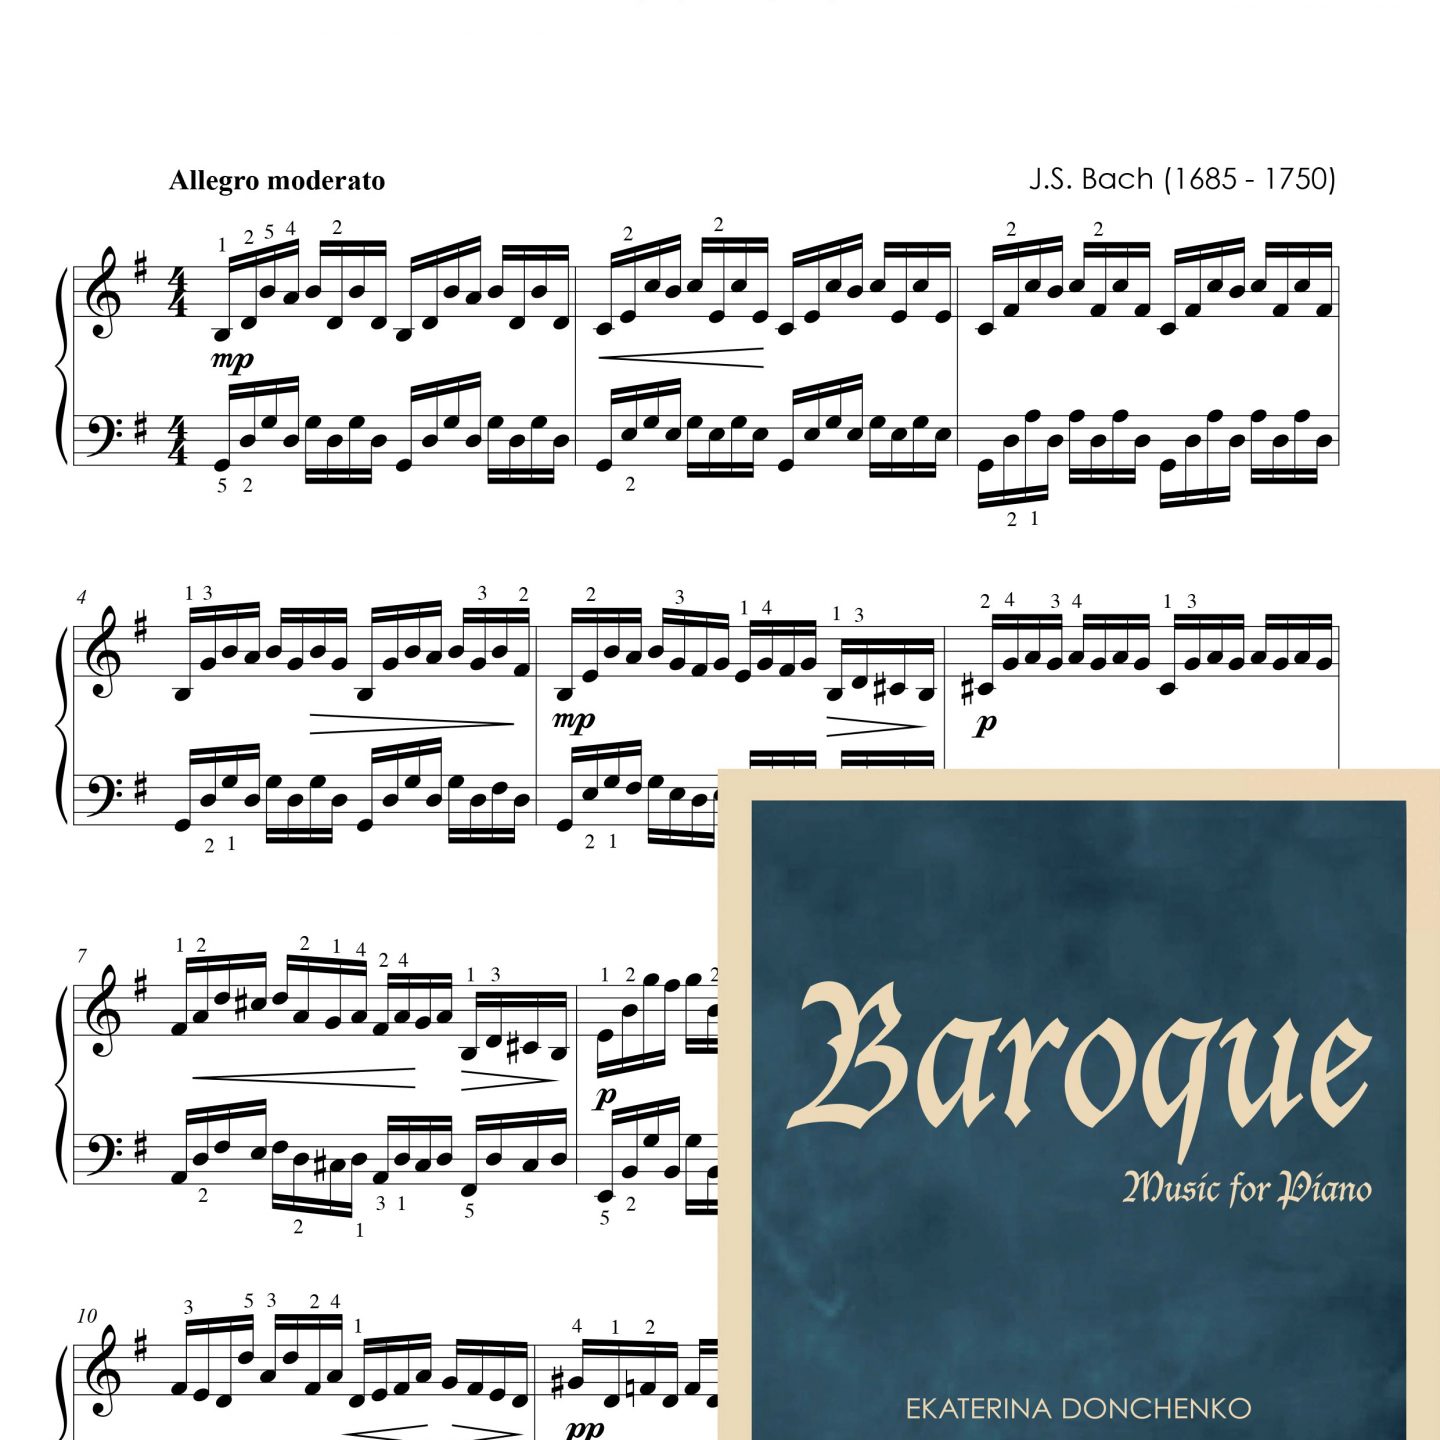 Bach J.S. – PRELUDIO* – Suite Nº1 para cello (BWV 1007), transcripción para piano